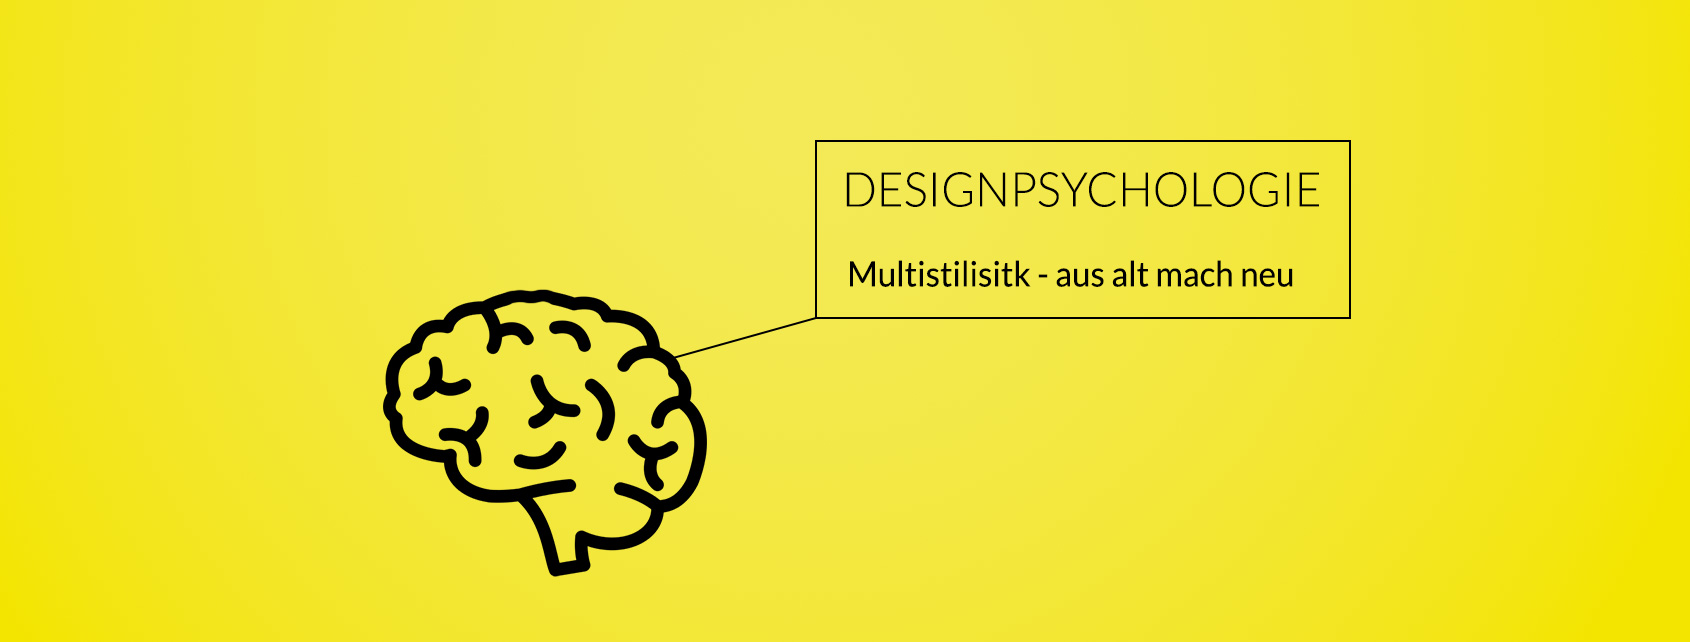 Design-Mix in der Medien-Gestaltung: Wie kam es zur Multistilistik?